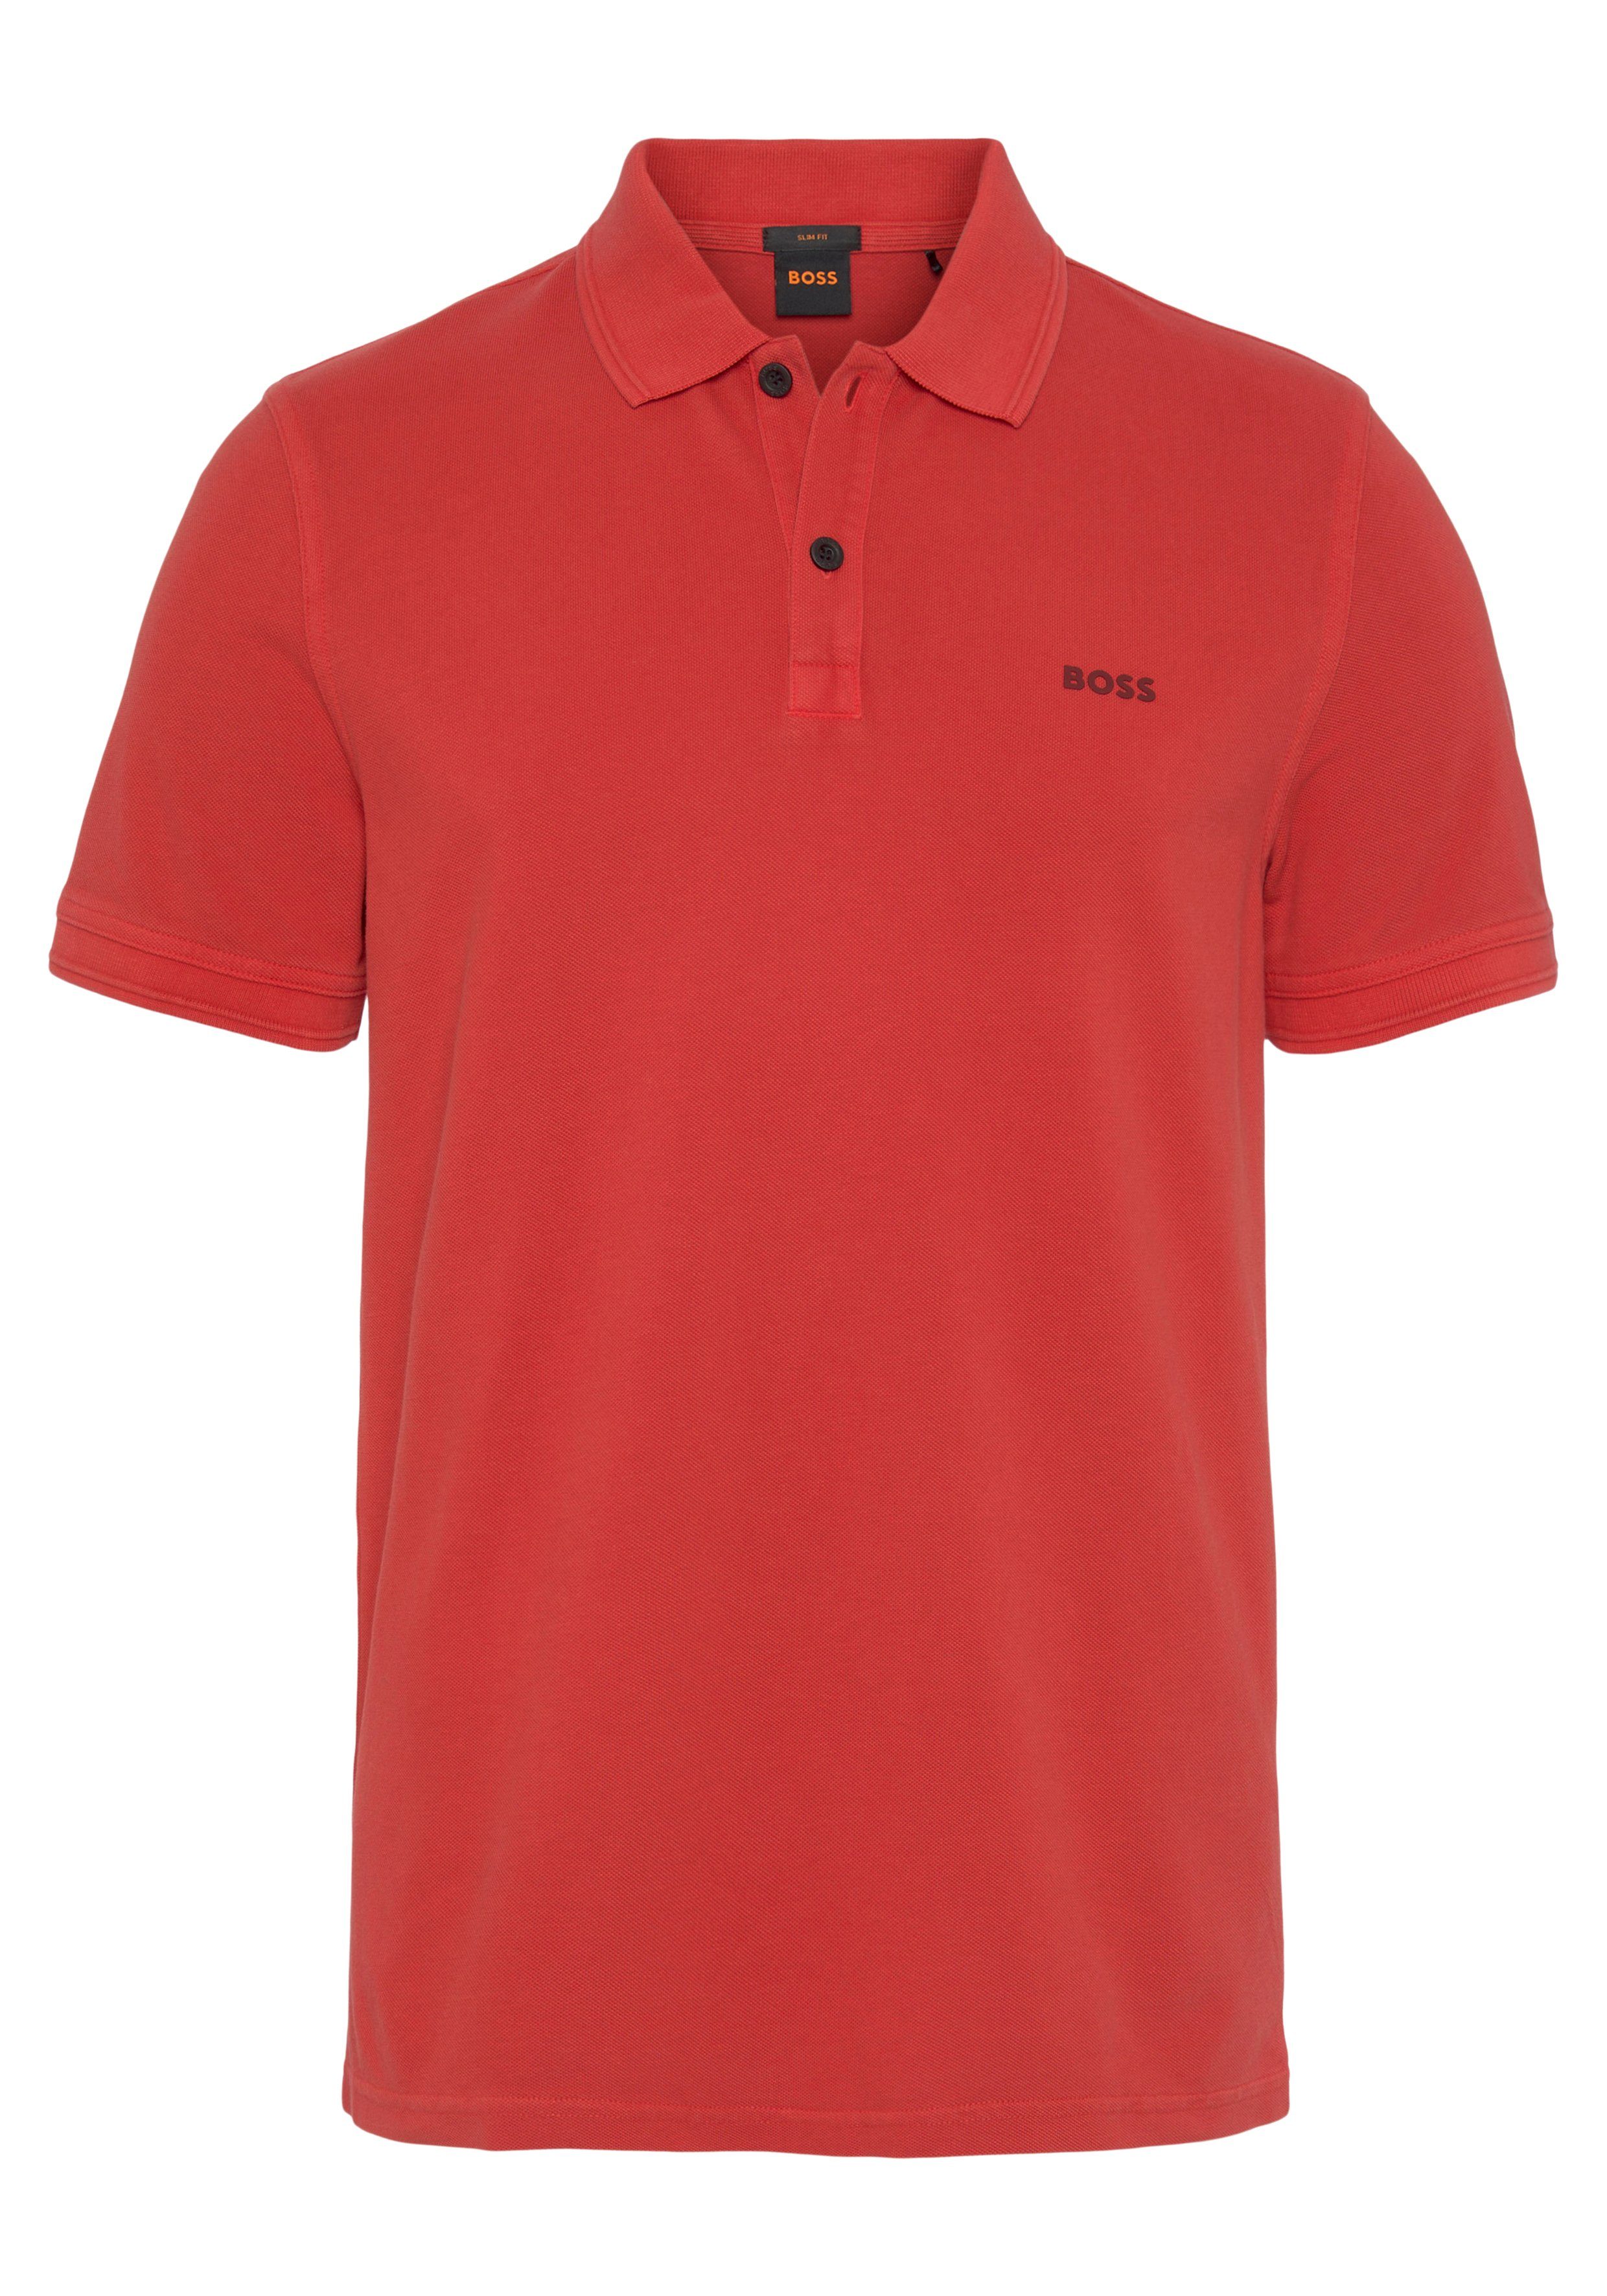 BOSS ORANGE Poloshirt mit Prime Bright_Red 01 Brust Logoschriftzug 10203439 der auf dezentem